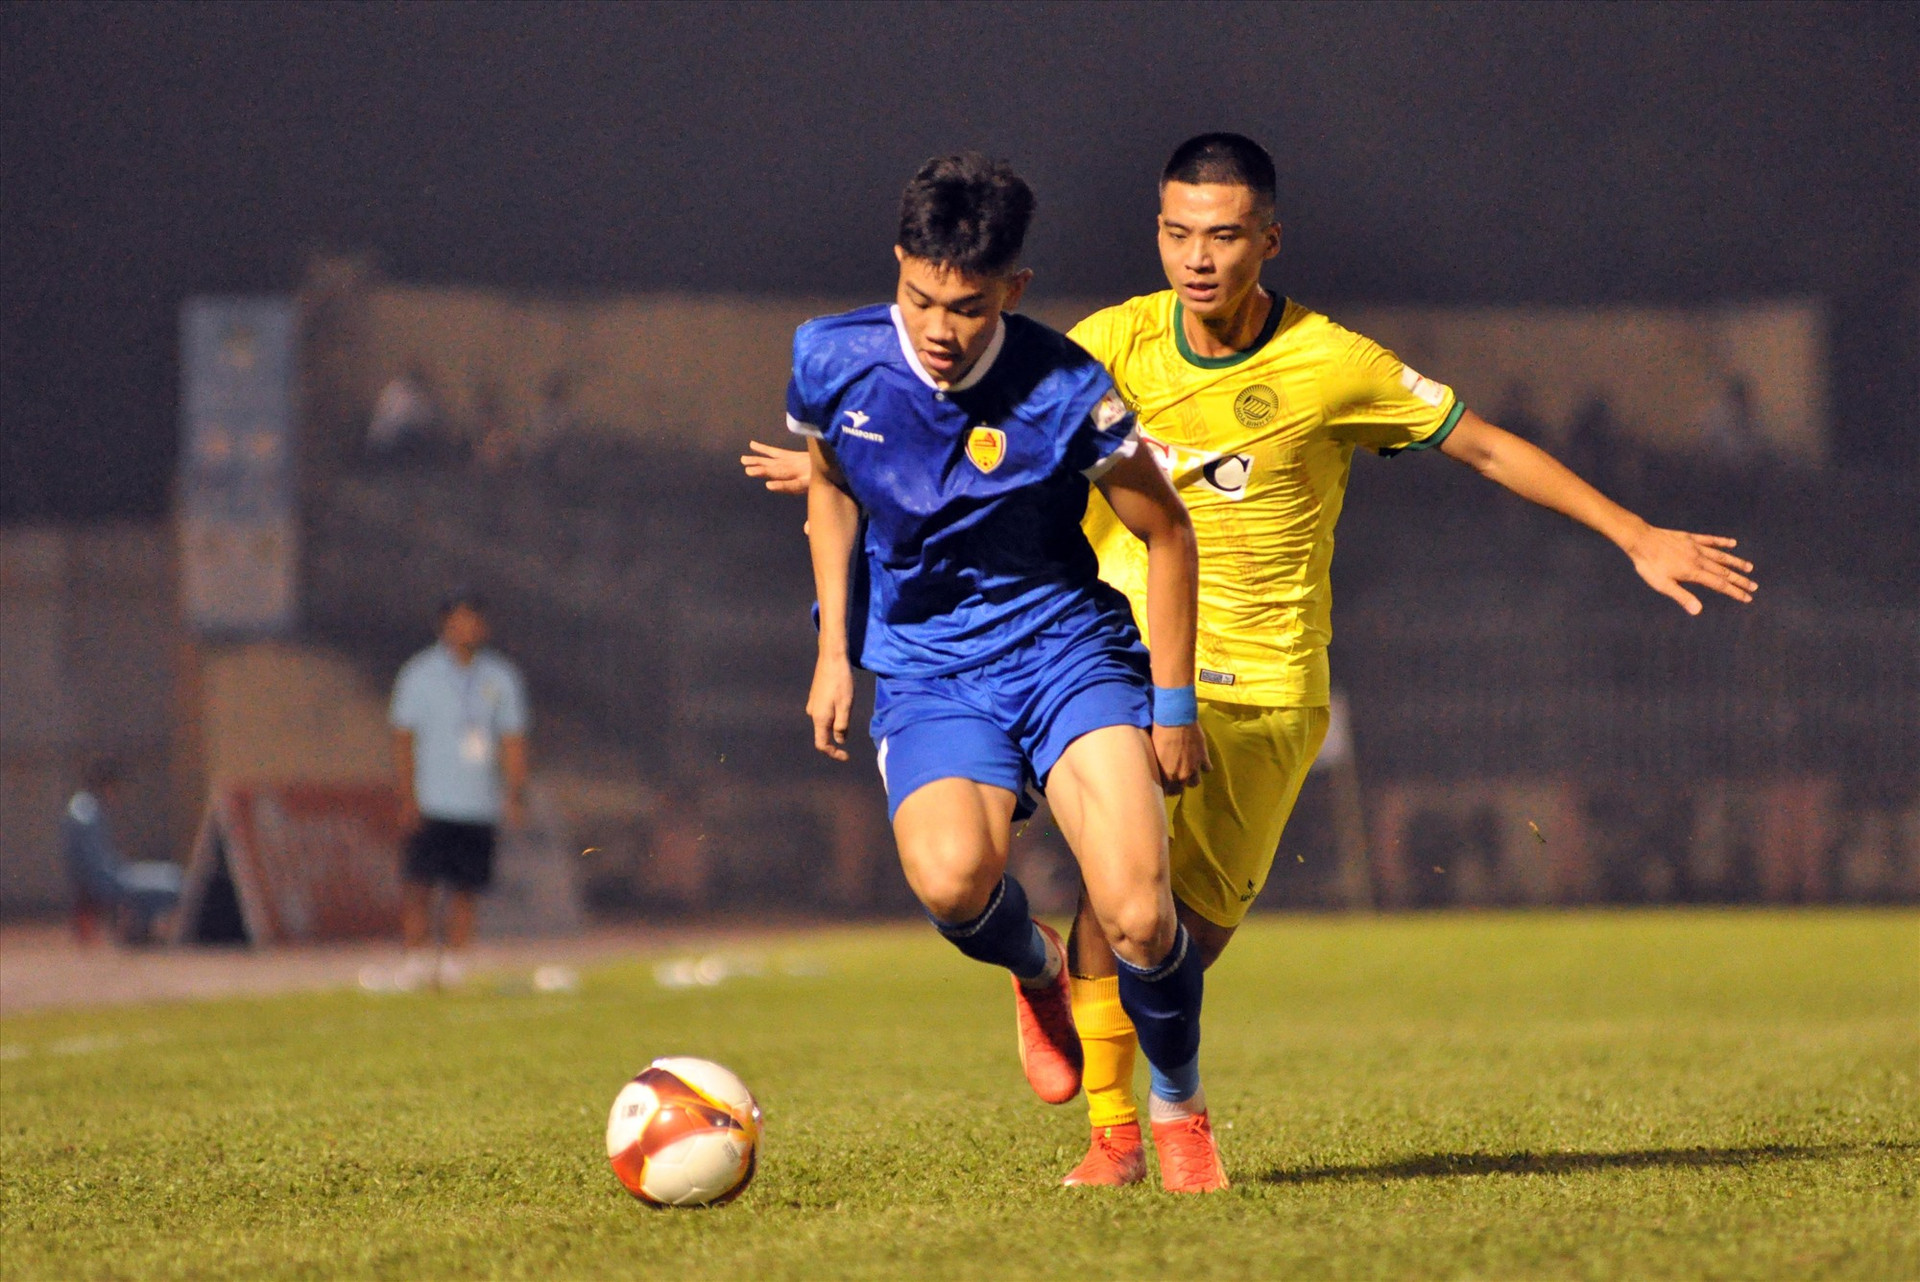 Cầu thủ 19 tuổi Nguyễn Đình Bắc là một trong những niềm hy vọng của bóng đá Quảng Nam. Ảnh: A.NHI